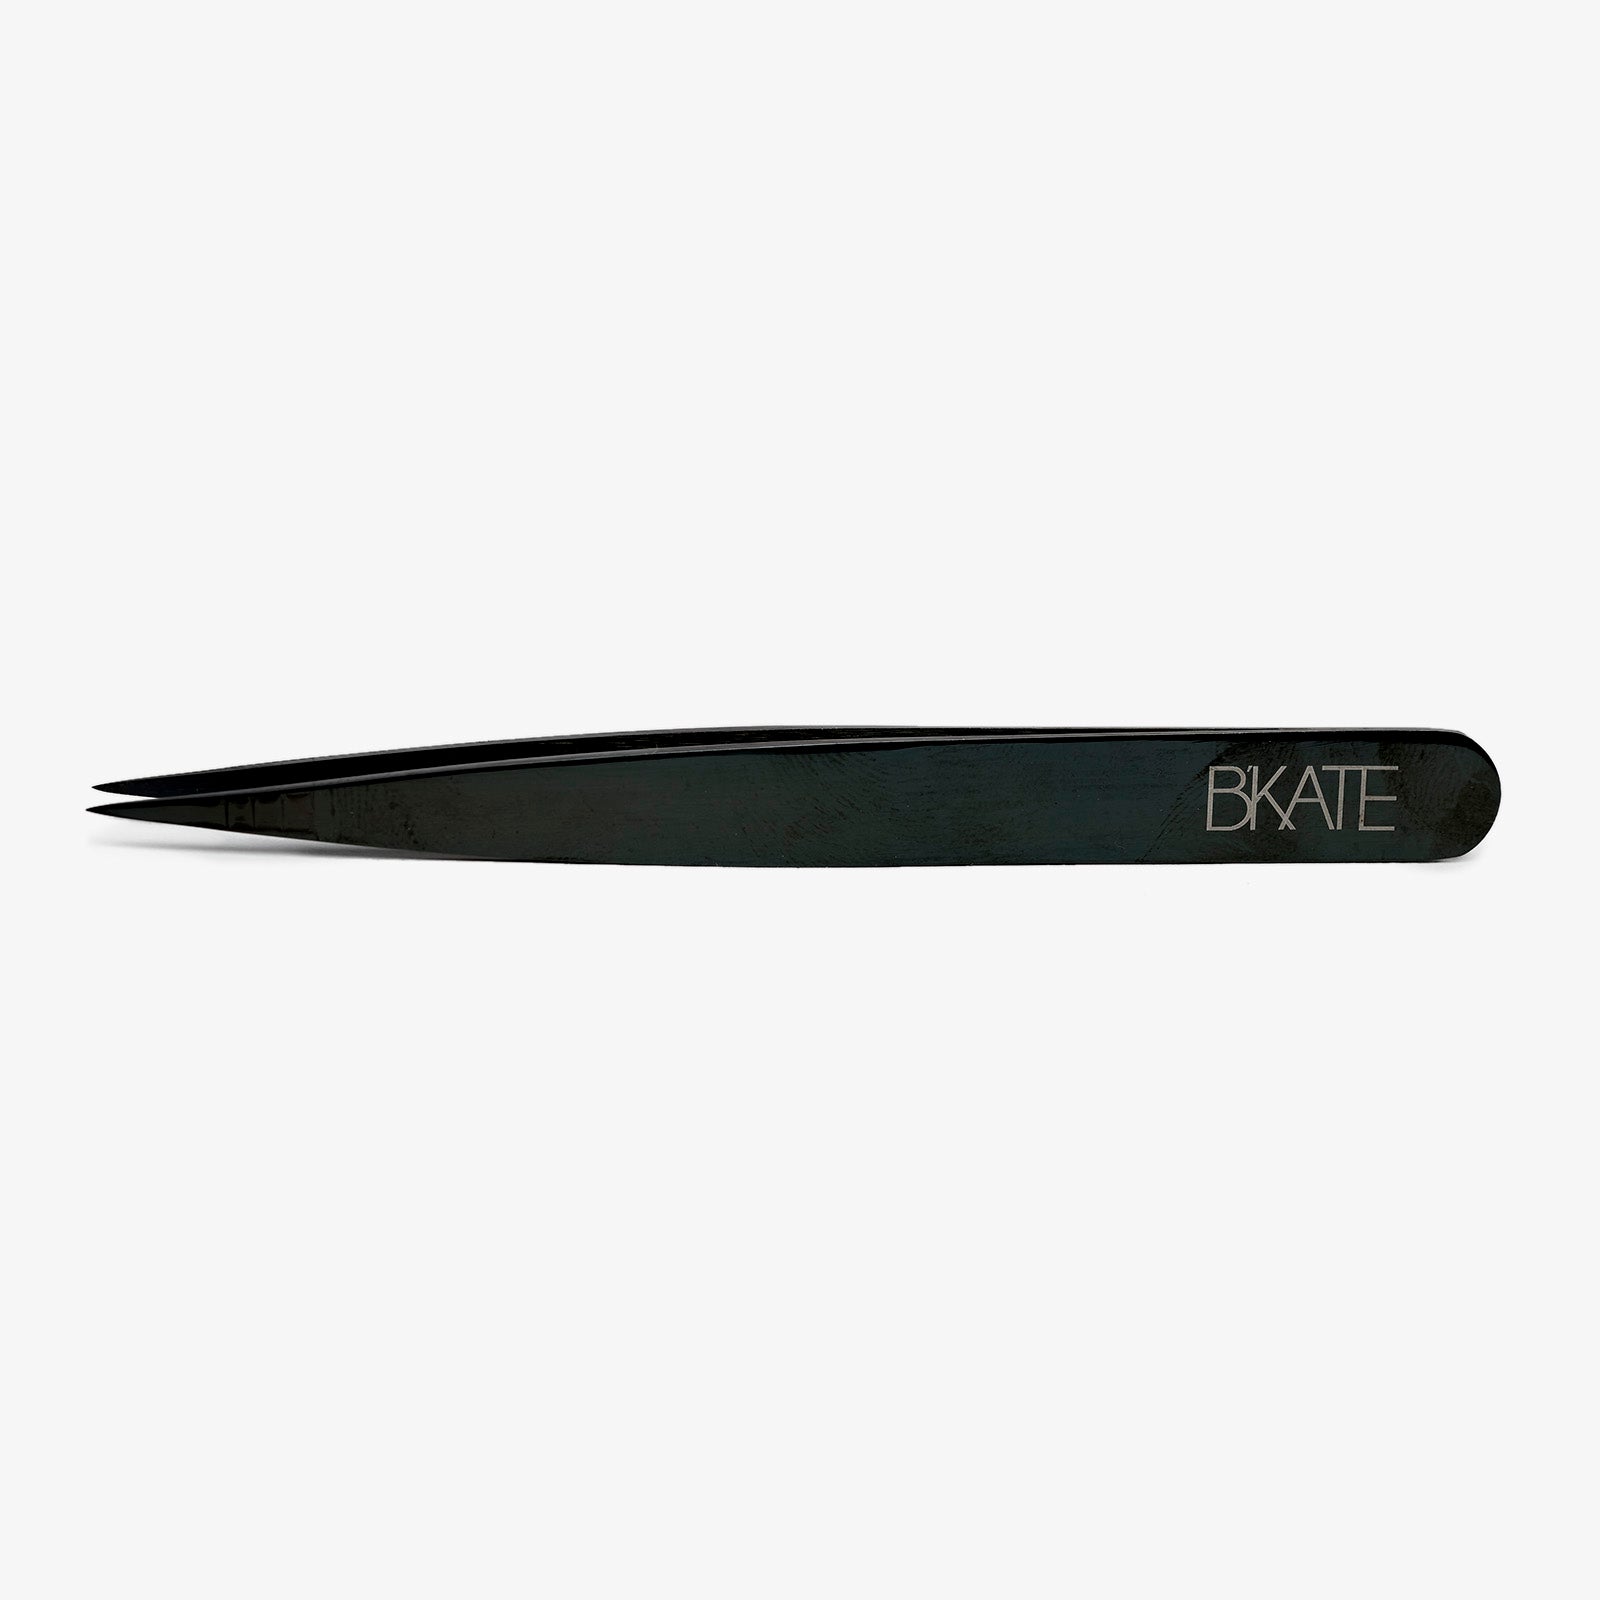 BKATE Pointed Tweezers | Best Brow Tweezers – B'kate Cosmetics